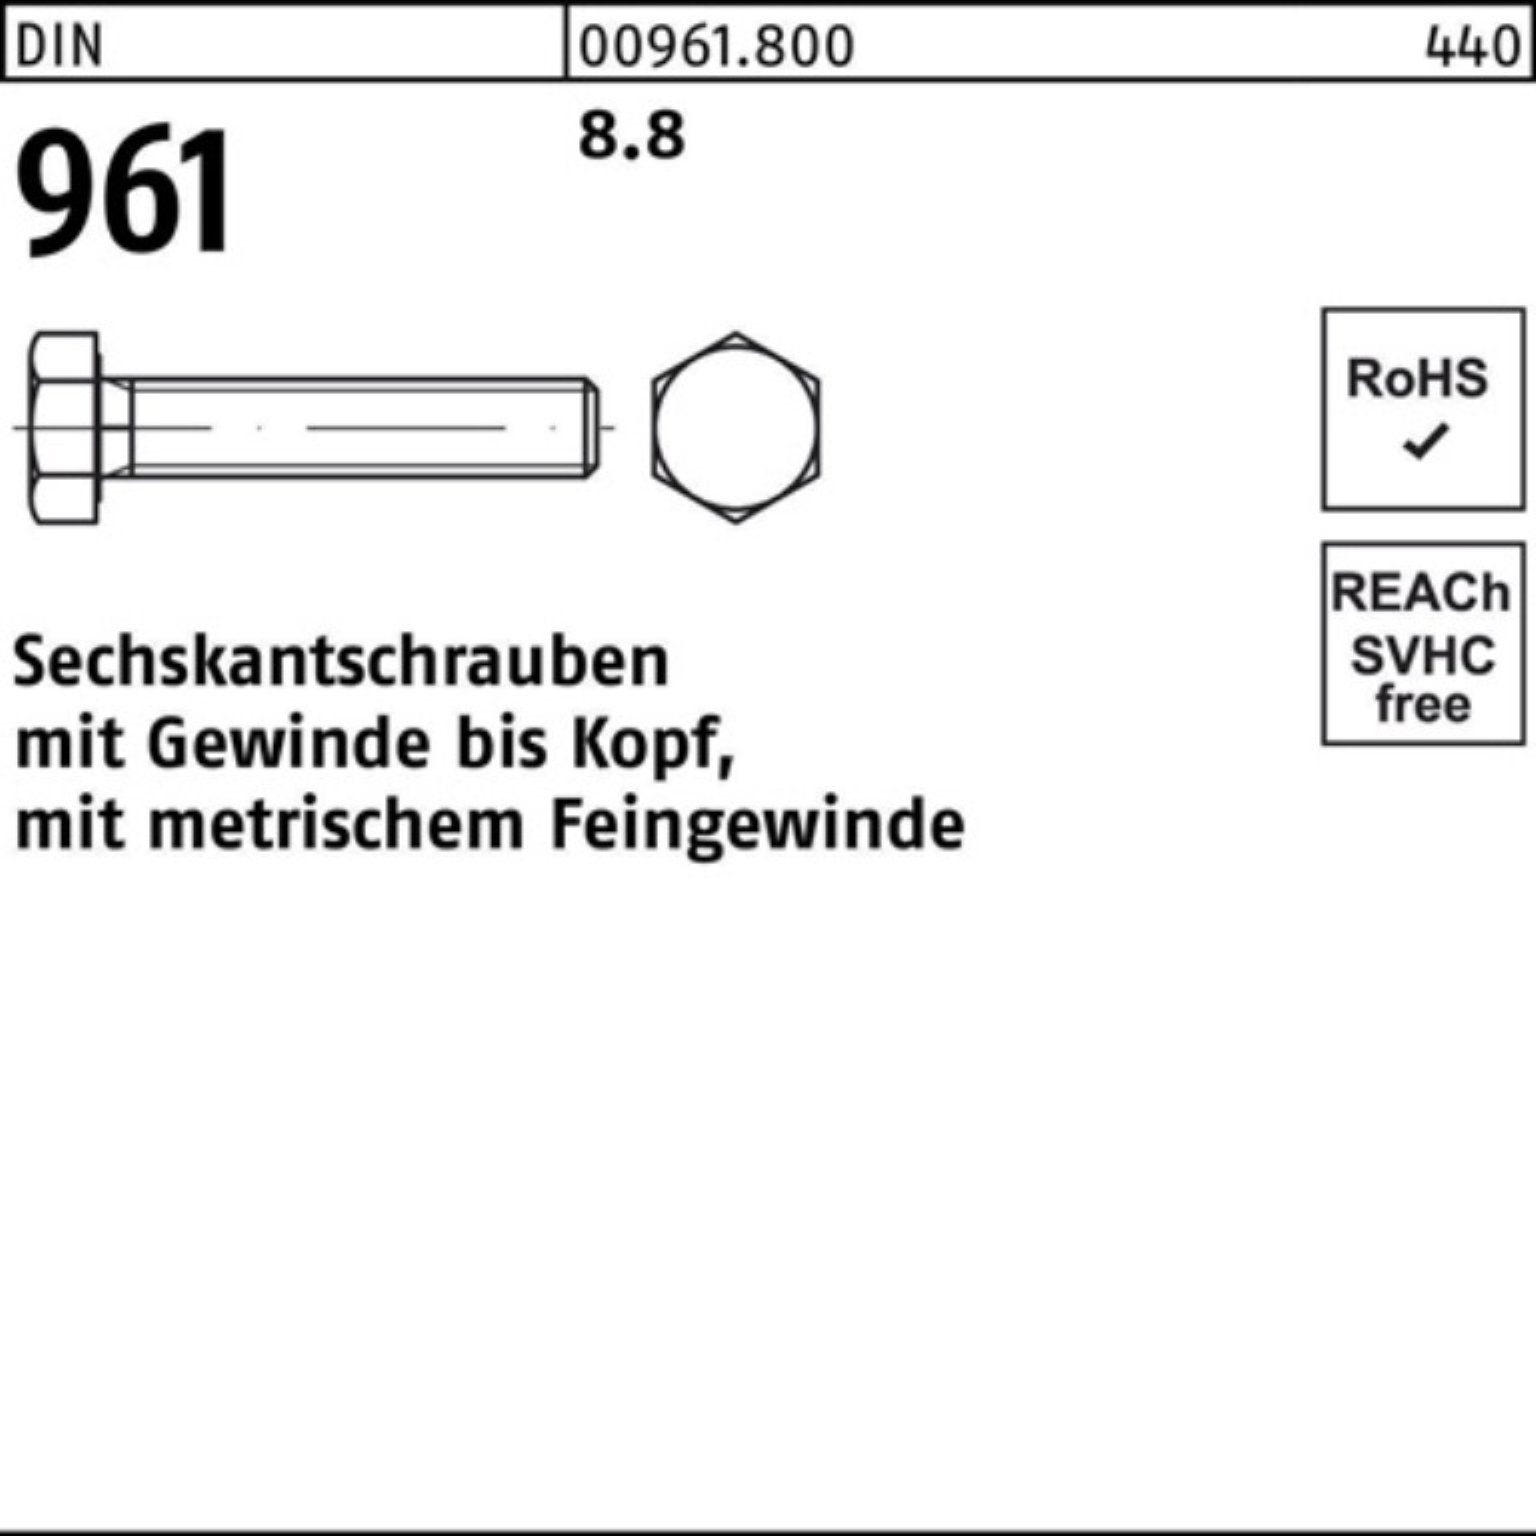 Sechskantschraube 100er VG Reyher Sechskantschraube Stück DIN DIN M42x3x160 961 Pack 1 8.8 961